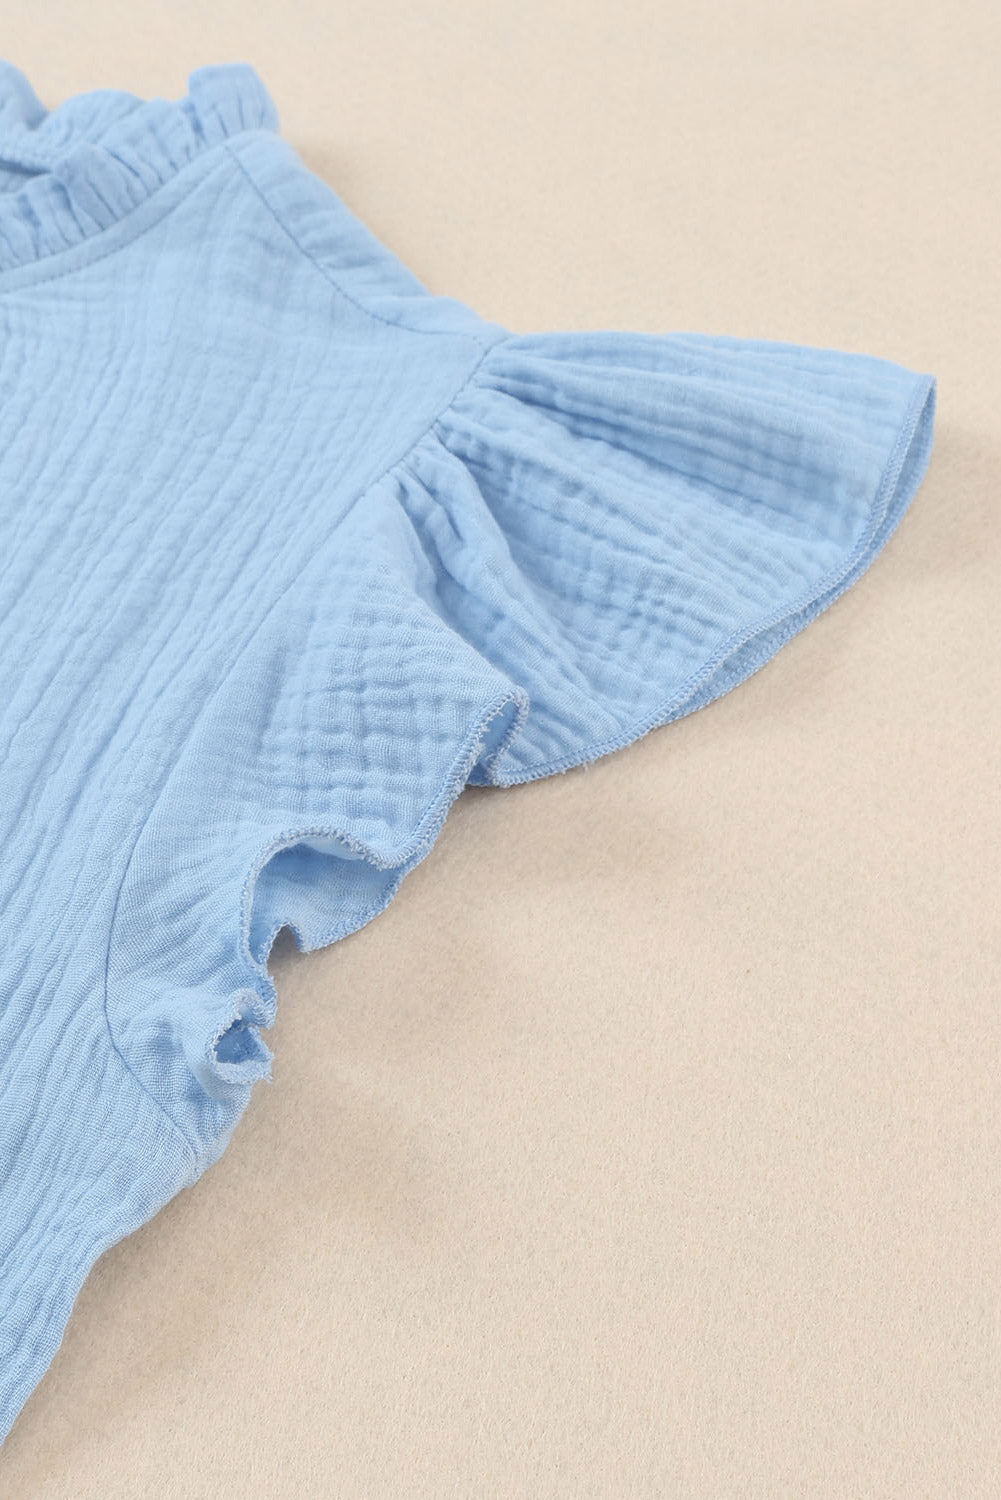 Himmelblaue, strukturierte Bluse mit Flatterärmeln und Rüschenkragen